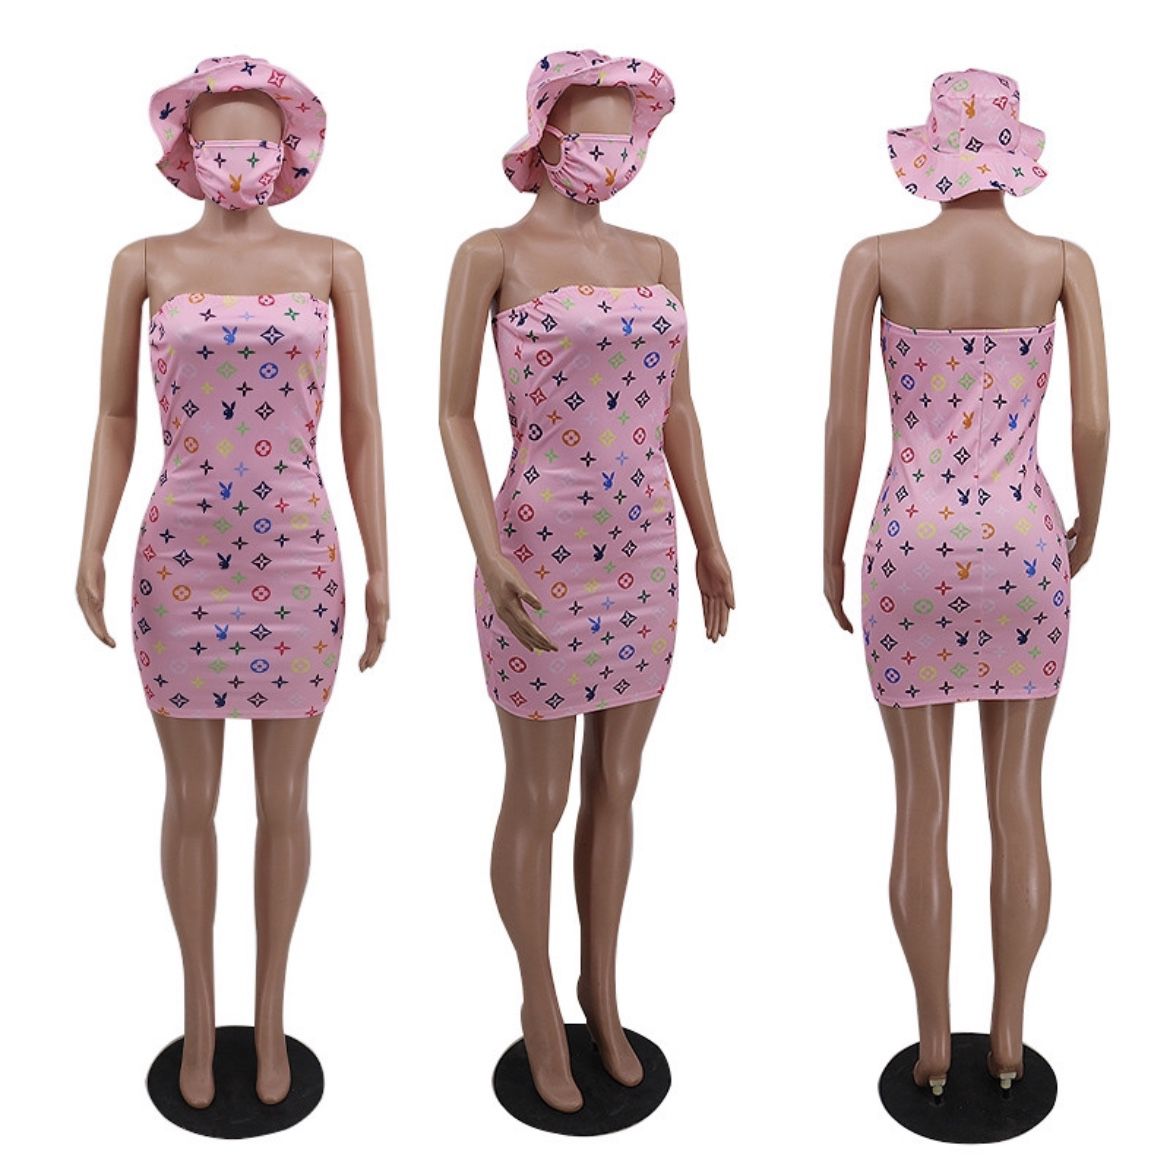 SALE Designer Playboy Bunny Pink Dress - Medium